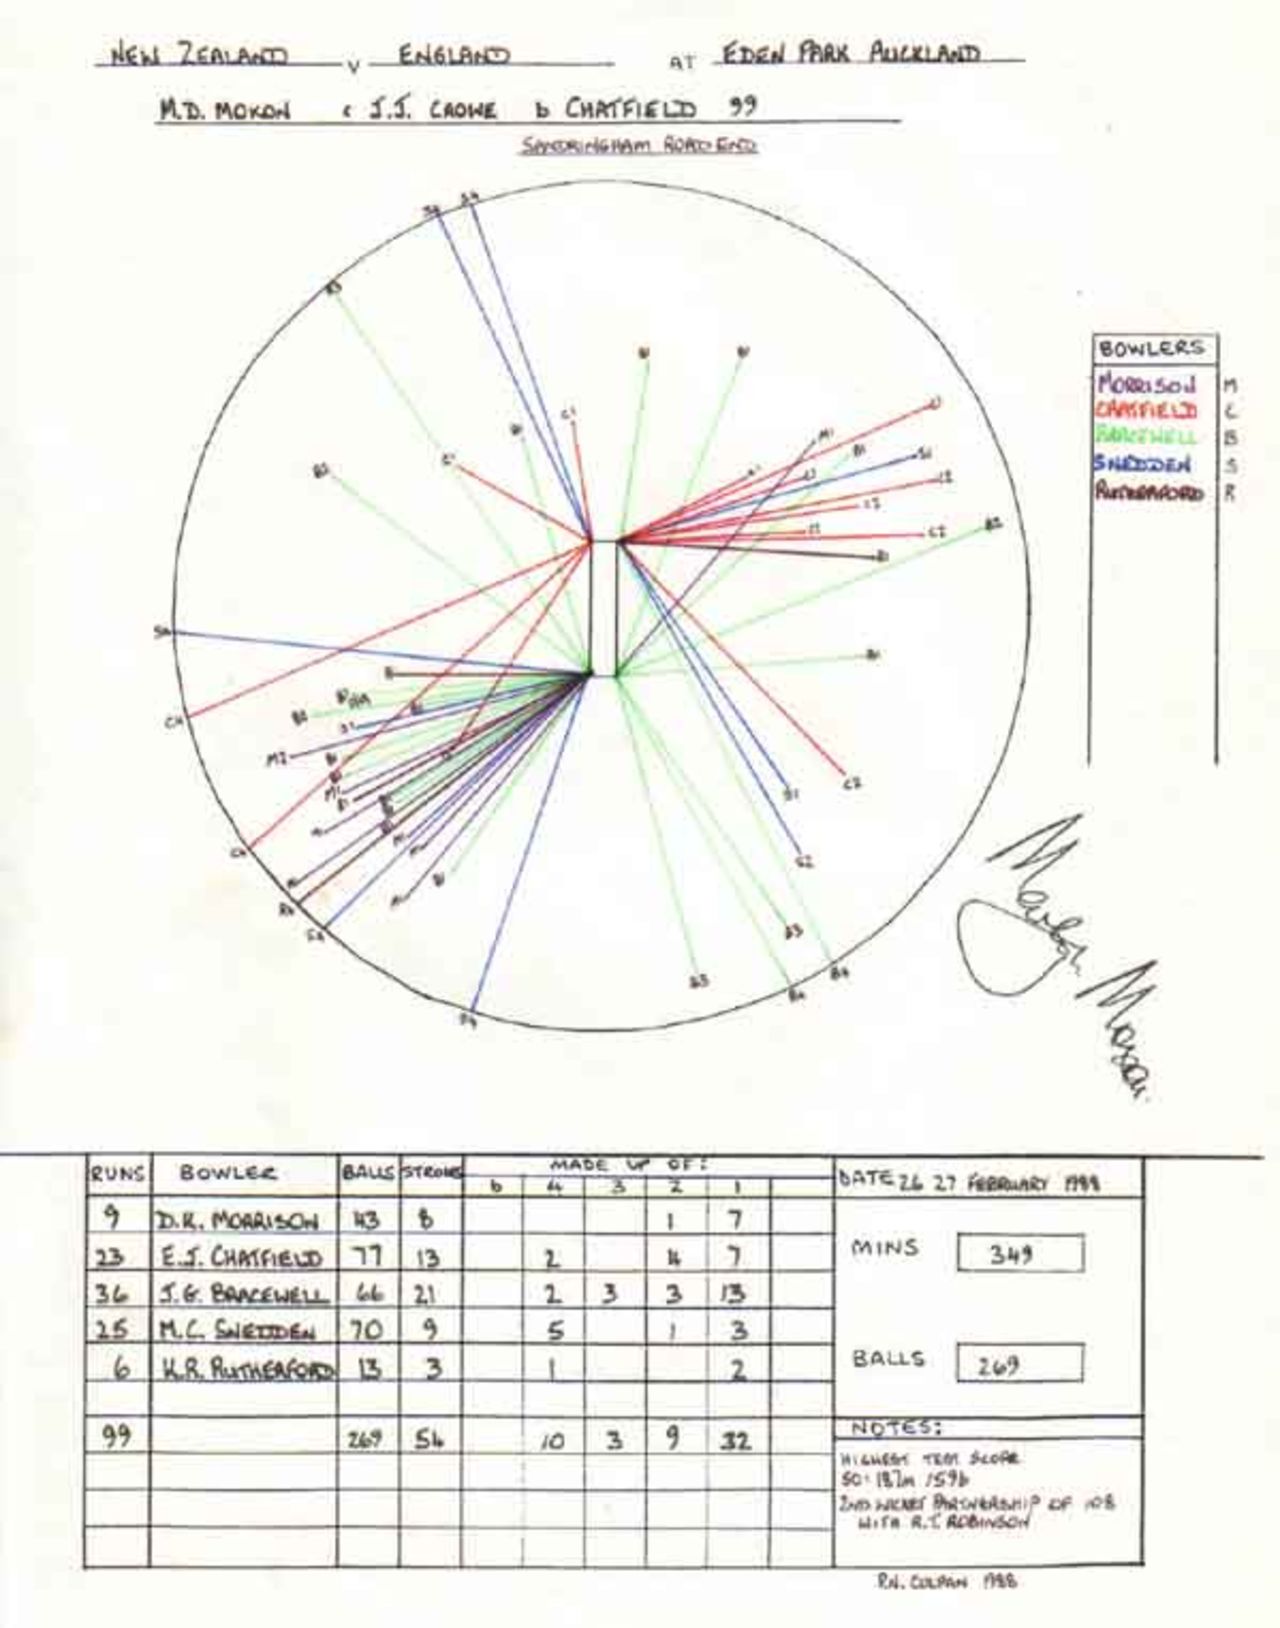 Wagon Wheel of Martyn Moxon 's 118 v New Zealand, Eden Park, Auckland 26-27 February 1988